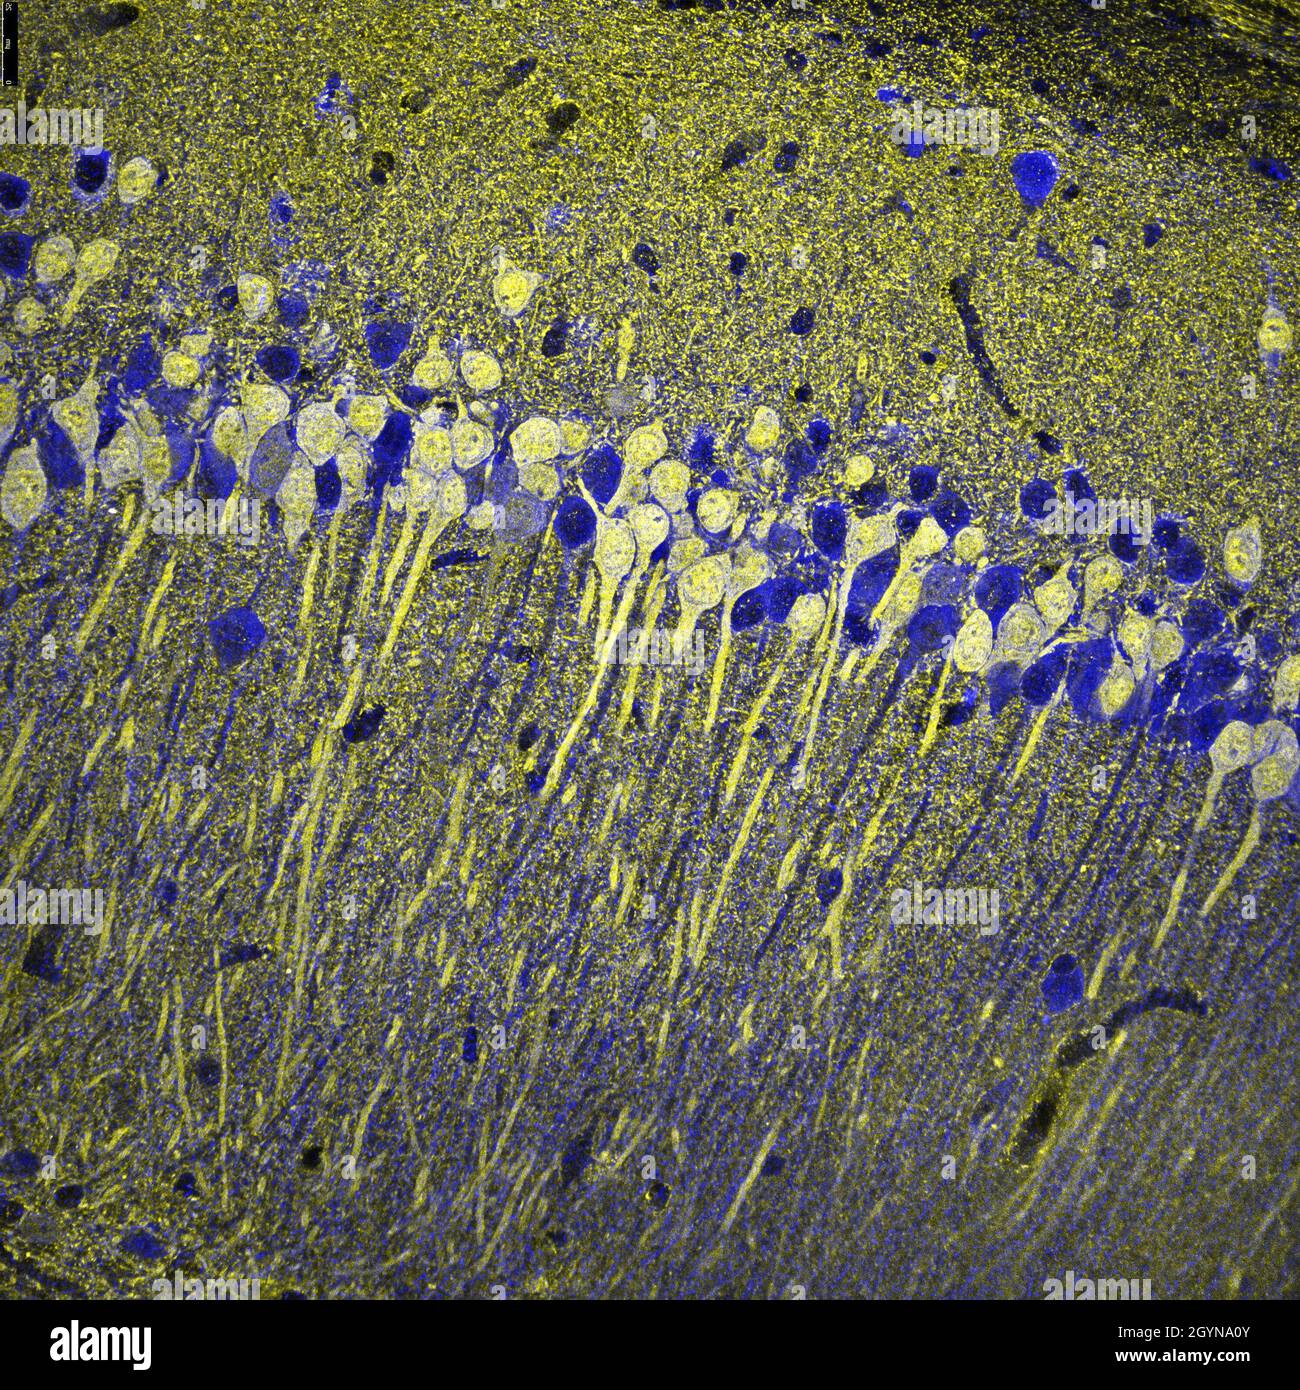 Abschnitt des Hippocampus-Bereichs CA1 der Maus, Zellen, die mit Immunfluoreszenz markiert und mit einem konfokalen Laser-Scanning-Mikroskop visualisiert wurden Stockfoto